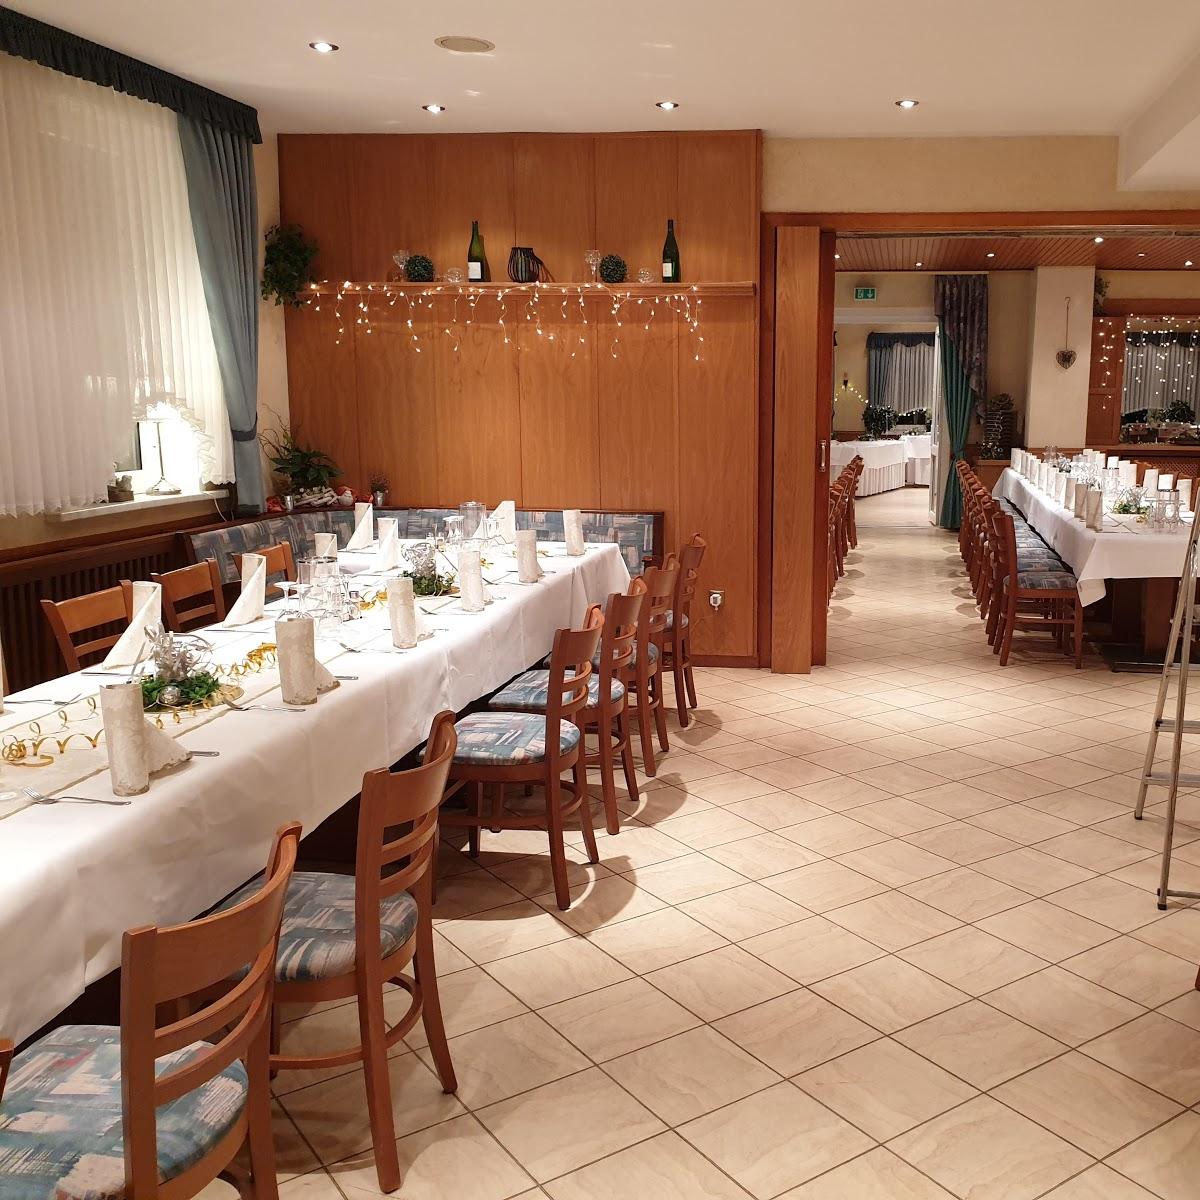 Restaurant "Fricke-Traupe Gasthaus Fleischerei-Partyservice" in Dassel